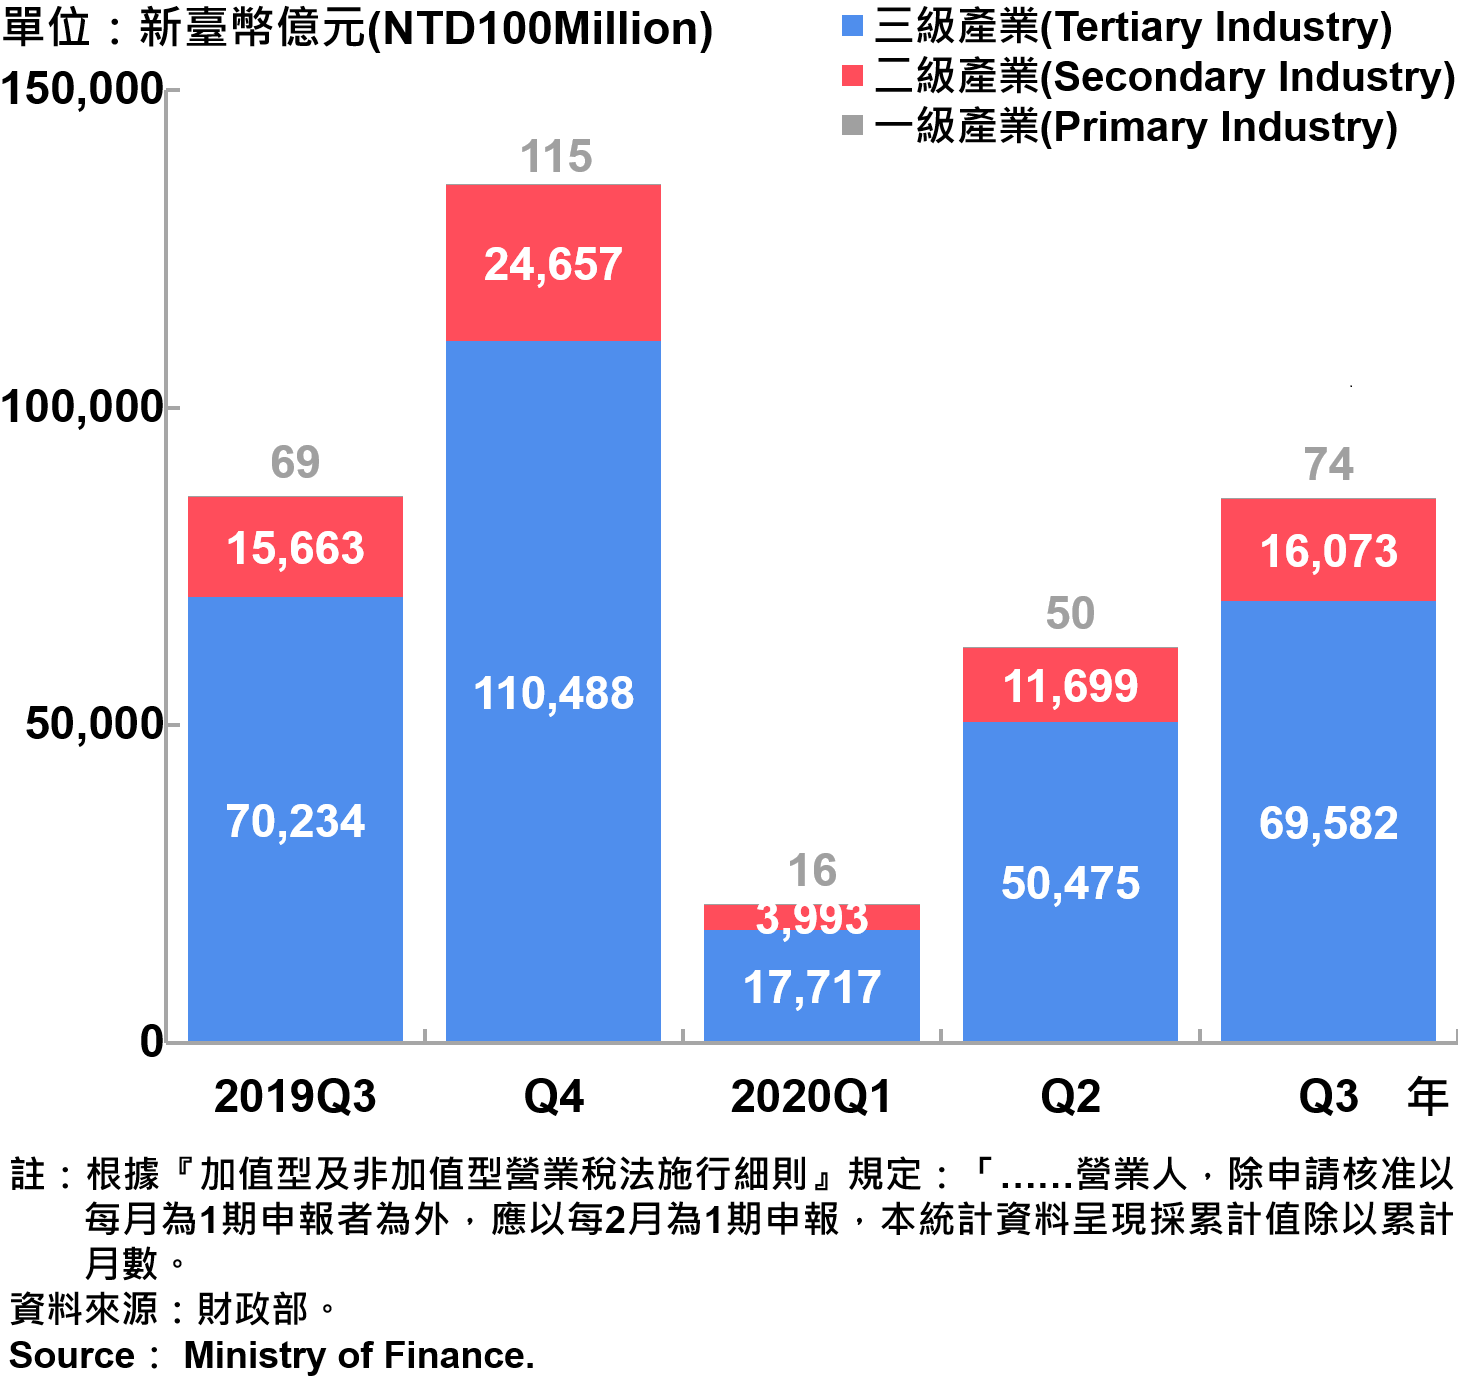 臺北市一二三級產業銷售額—2020Q3 Sales of Primary , Secondary and Tertiary Industry in Taipei City—2020Q3